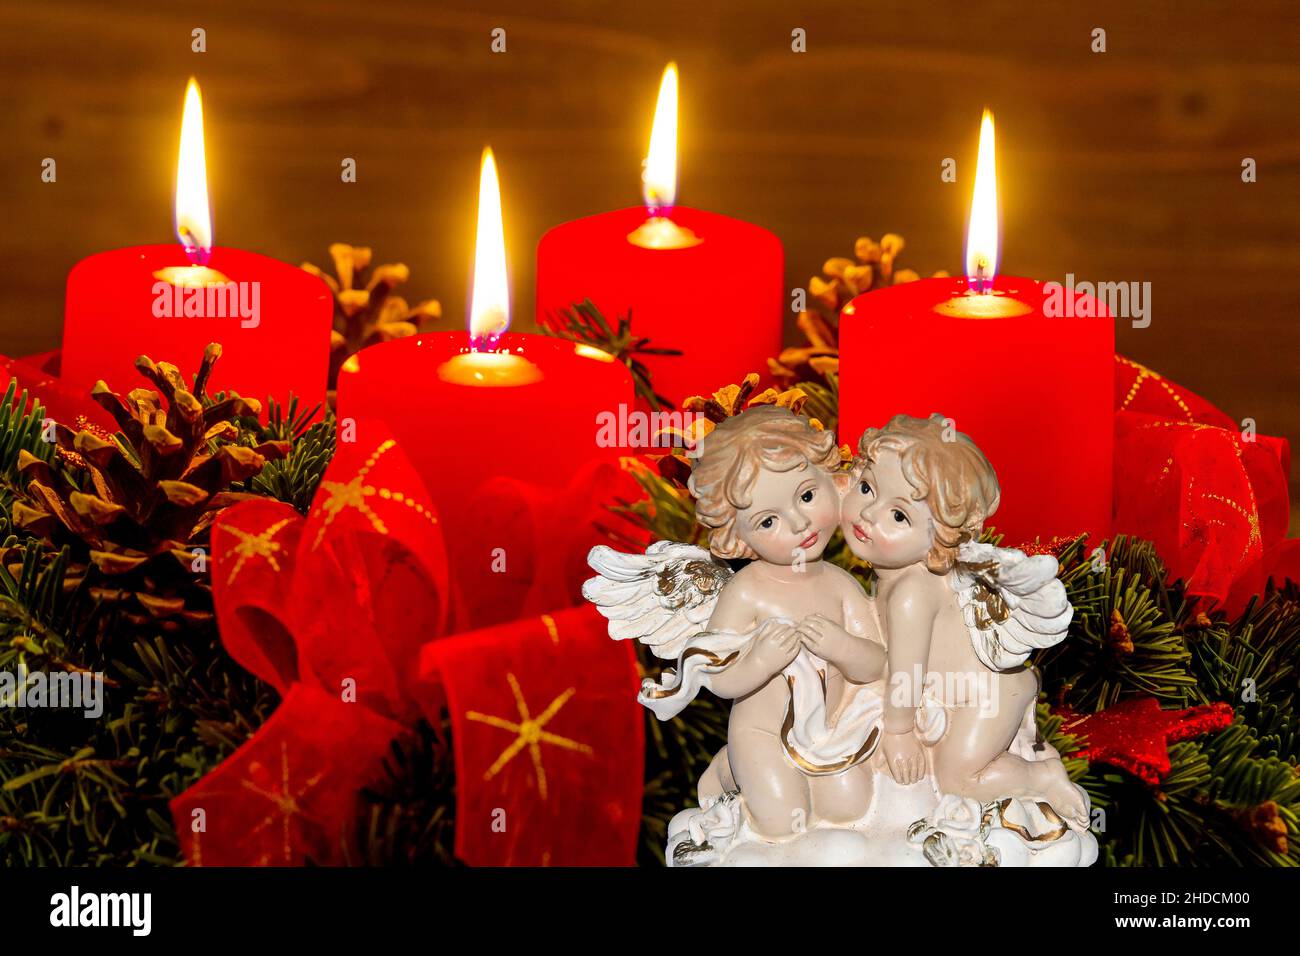 Ein Adventskranz zu Weihnachten sorgt für romatinsche Stimmung in der stillen Advent Zeit. 4 brennende Kerzen, 4. Advent, Zwei Engel, weihnachtsengel, Stock Photo